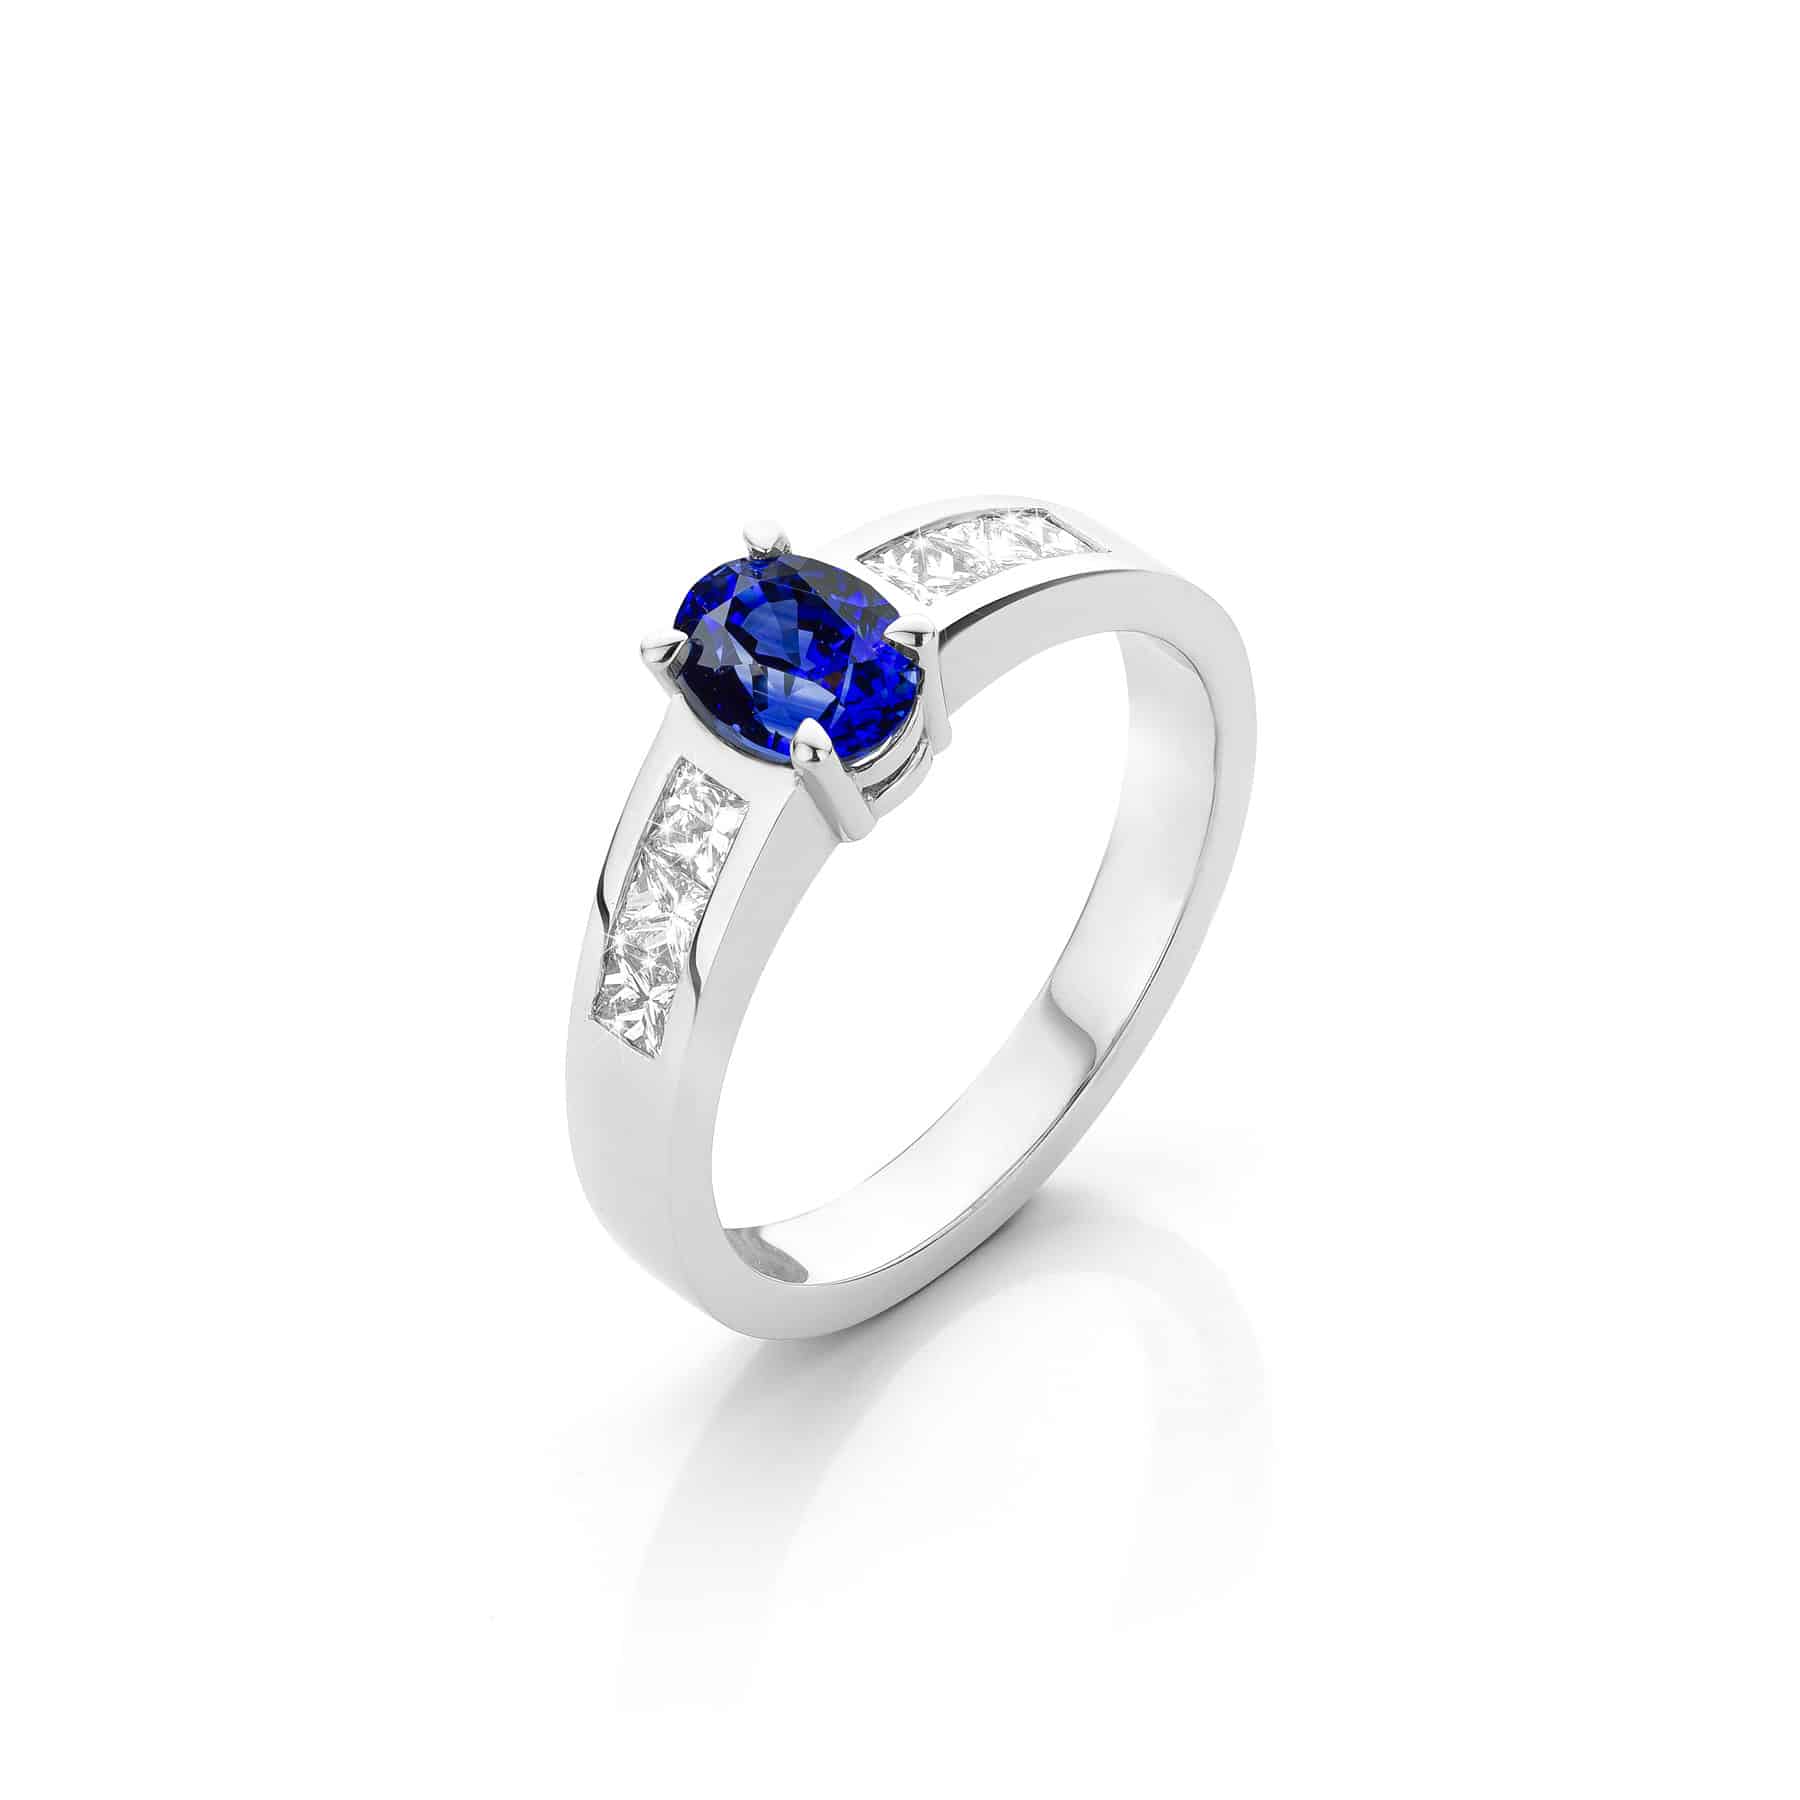 Blauwe saffier 1.15 ct. in 18 karaat witgouden ring met aan beide kanten 3 princess geslepen diamanten.